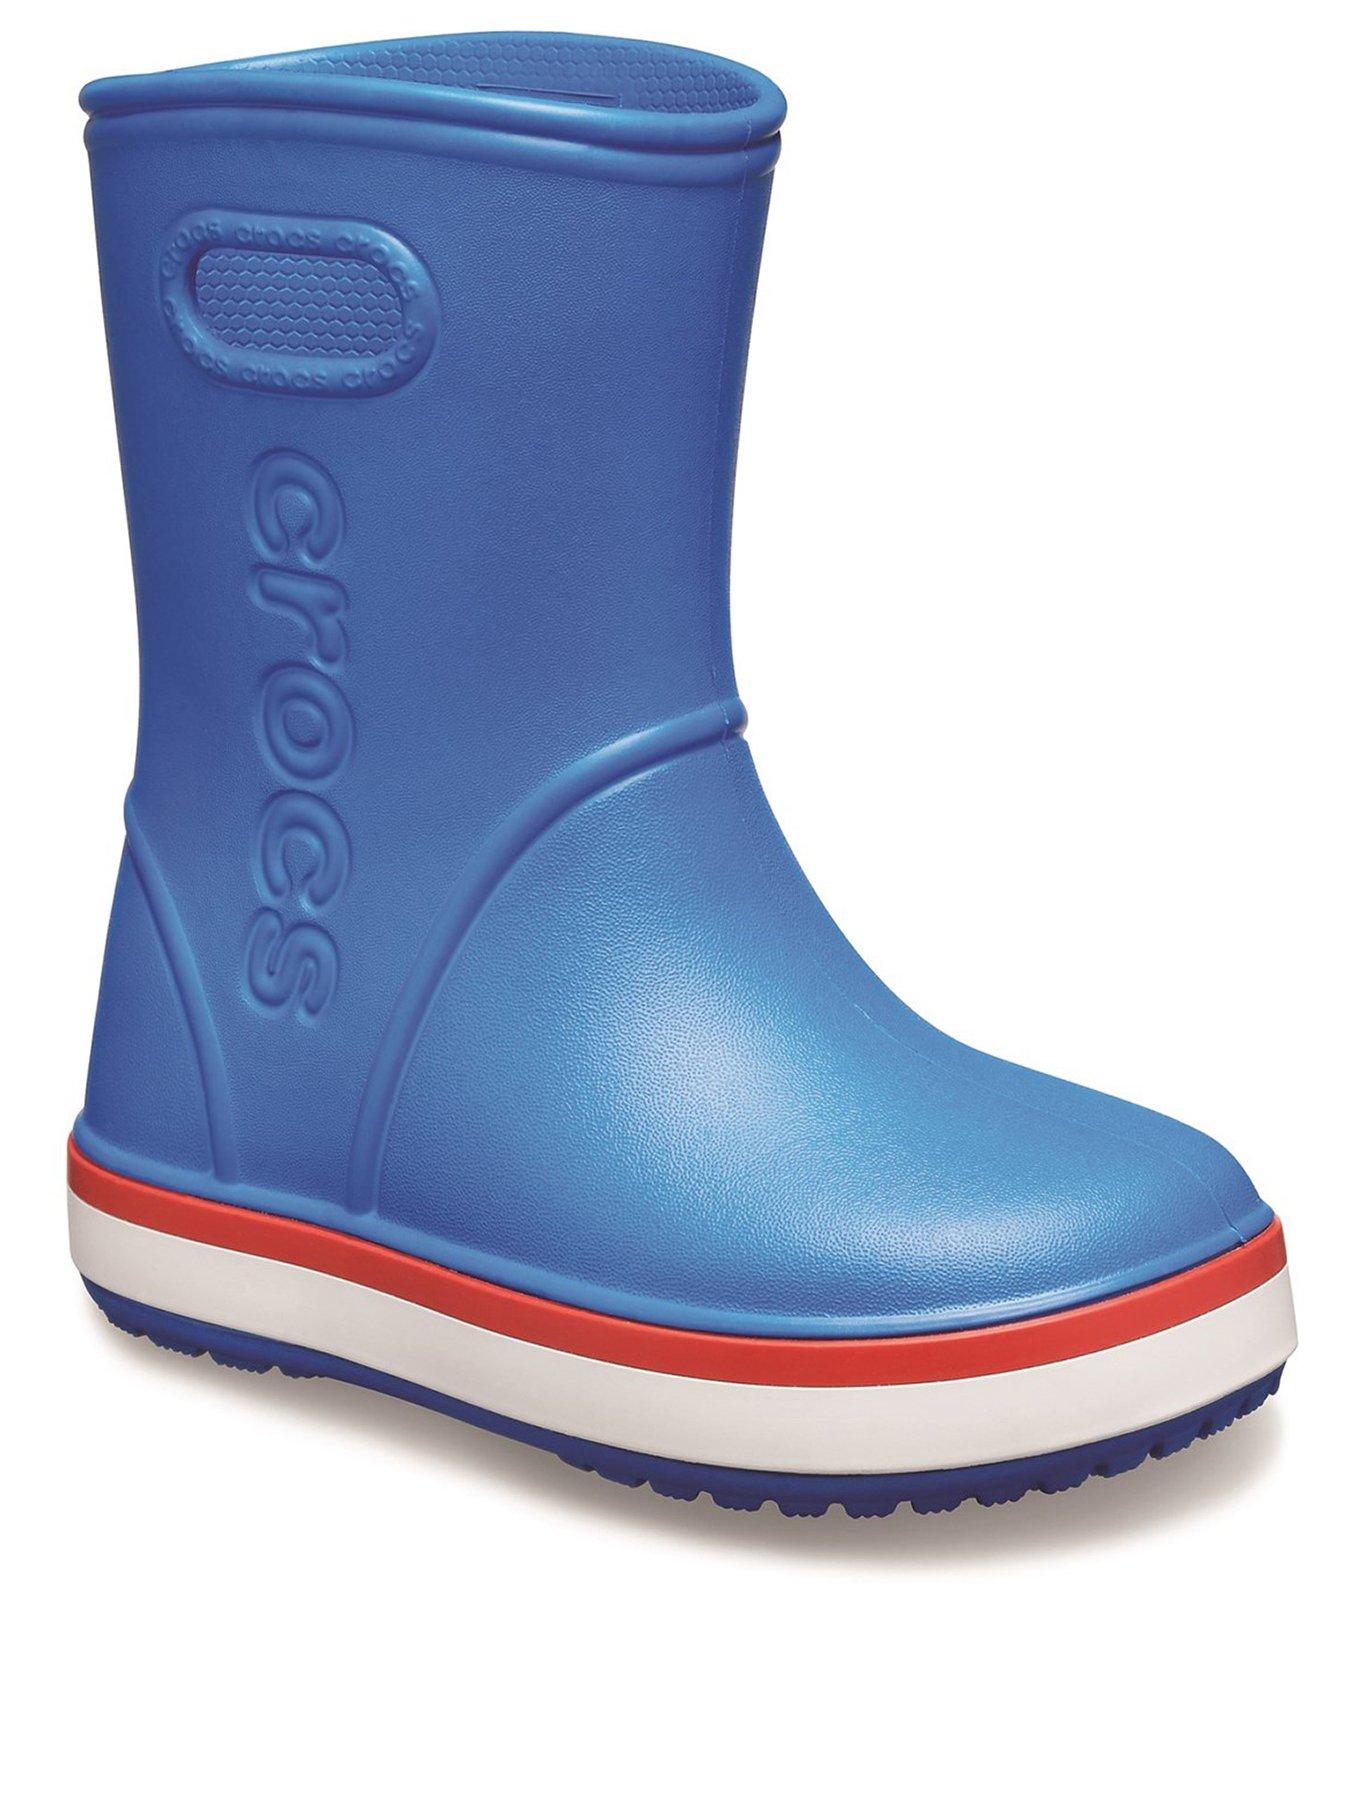 Kids blue Crocs Wellies rain lightweight Boots size 3 